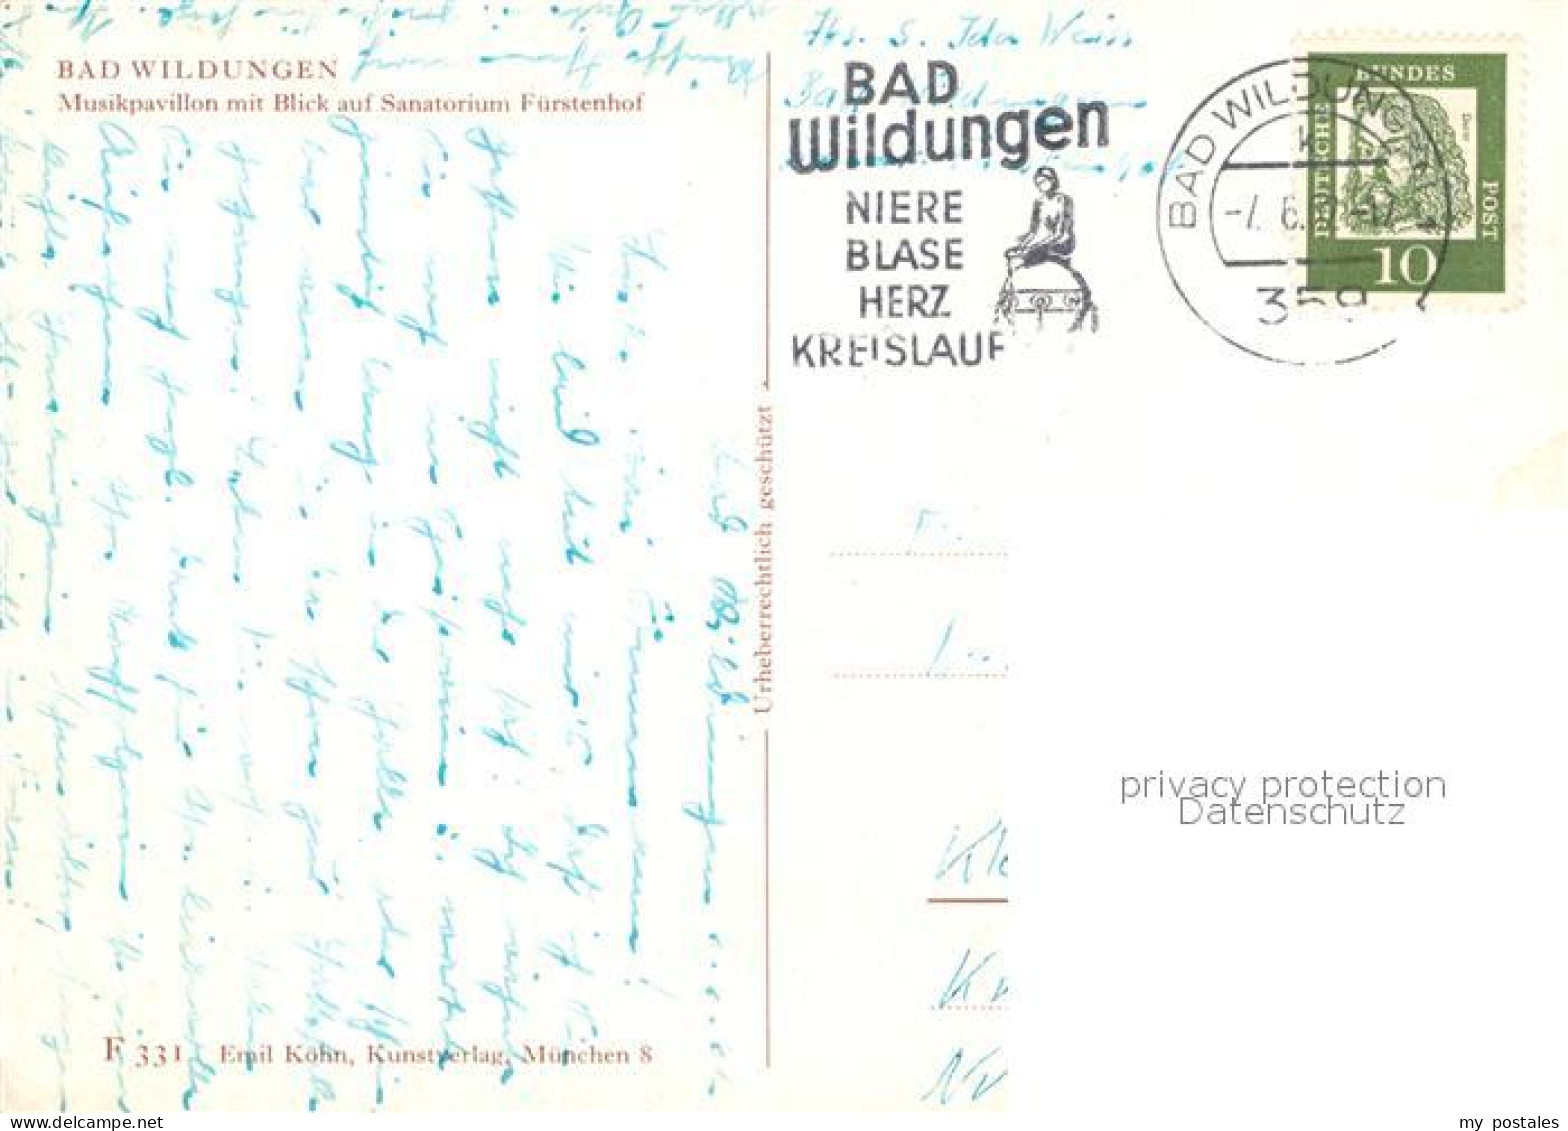 72990504 Bad Wildungen Musikpavillon Blick Auf Sanatorium Fuerstenhof Bad Wildun - Bad Wildungen